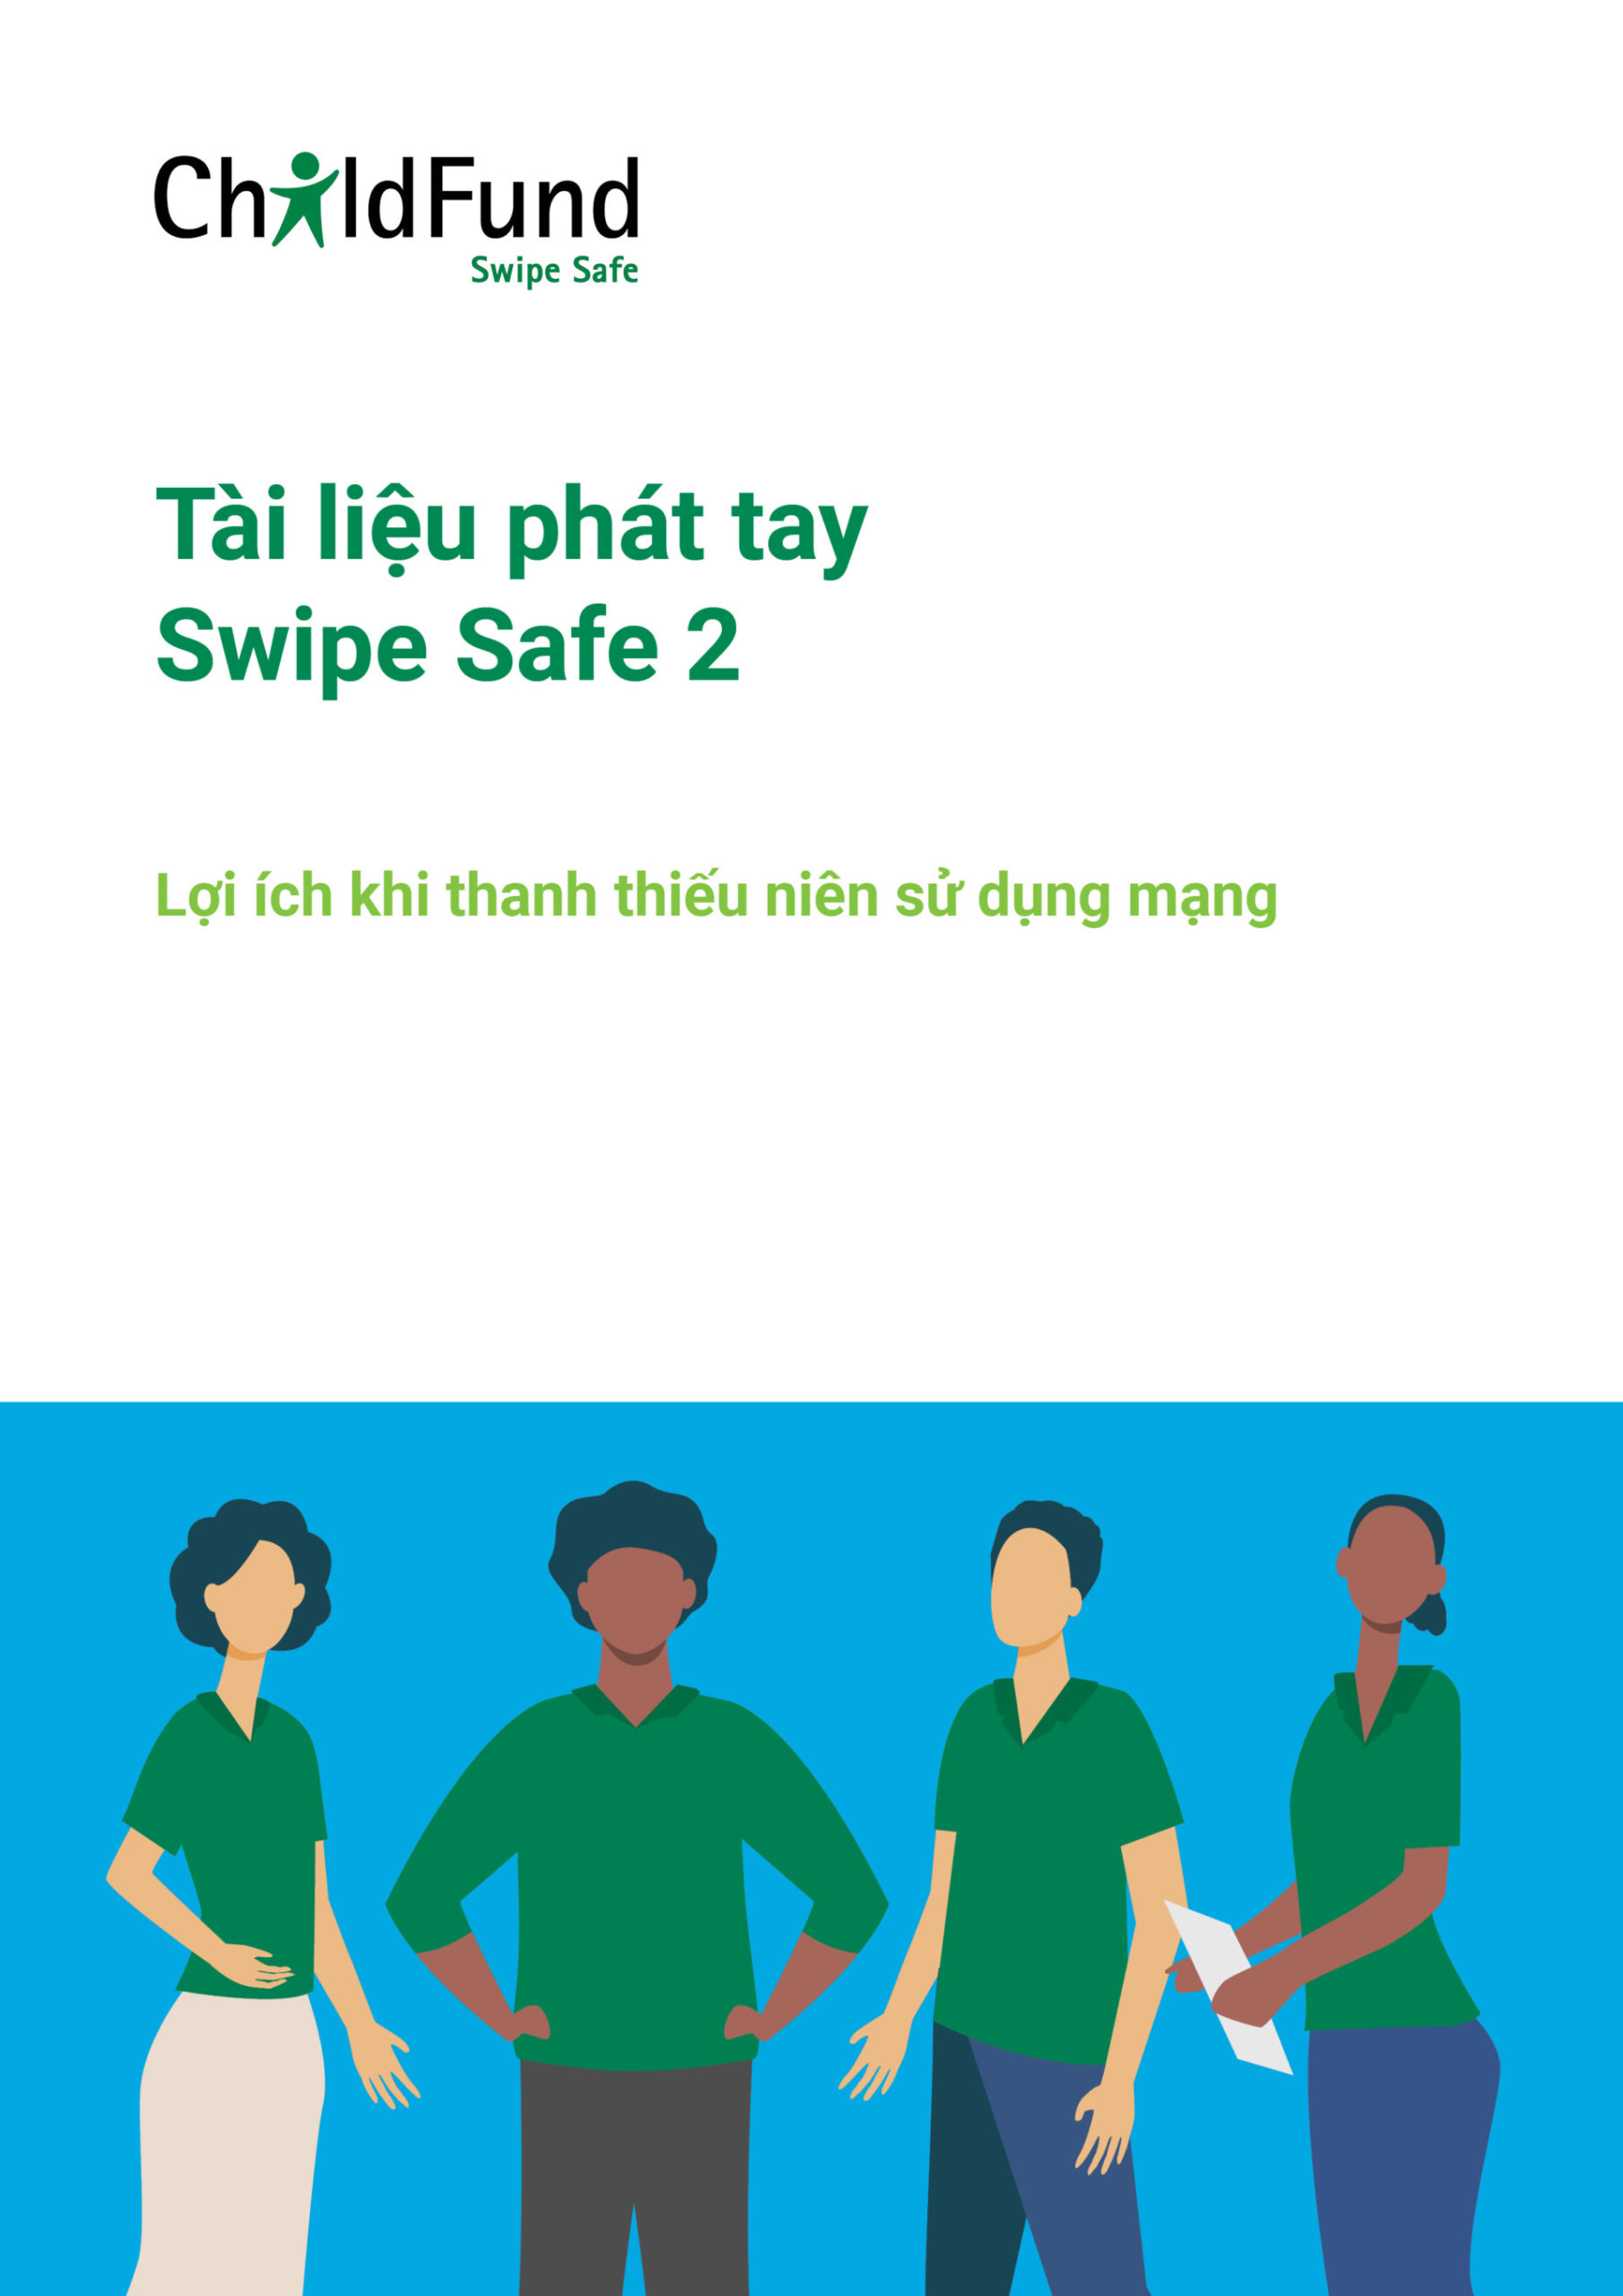 IEC – Tài liệu phát tay Swipe Safe 2